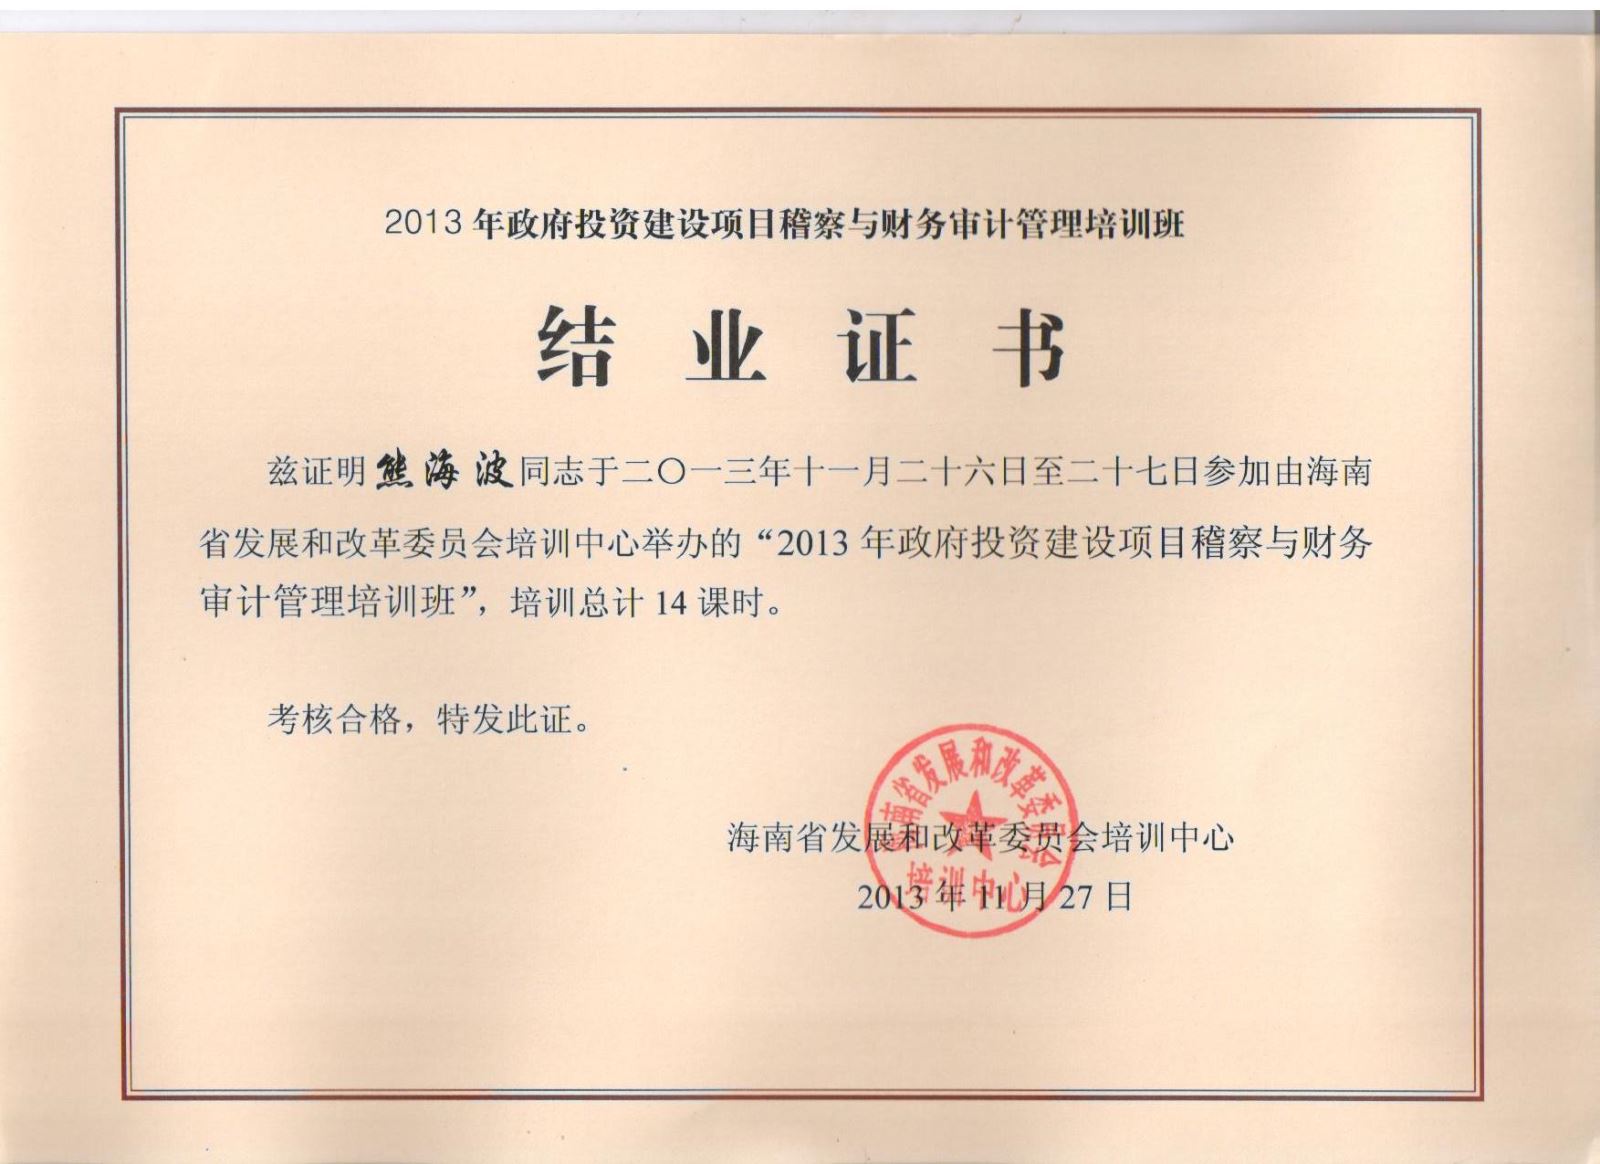 熊海波同志参加培训获得结业证书